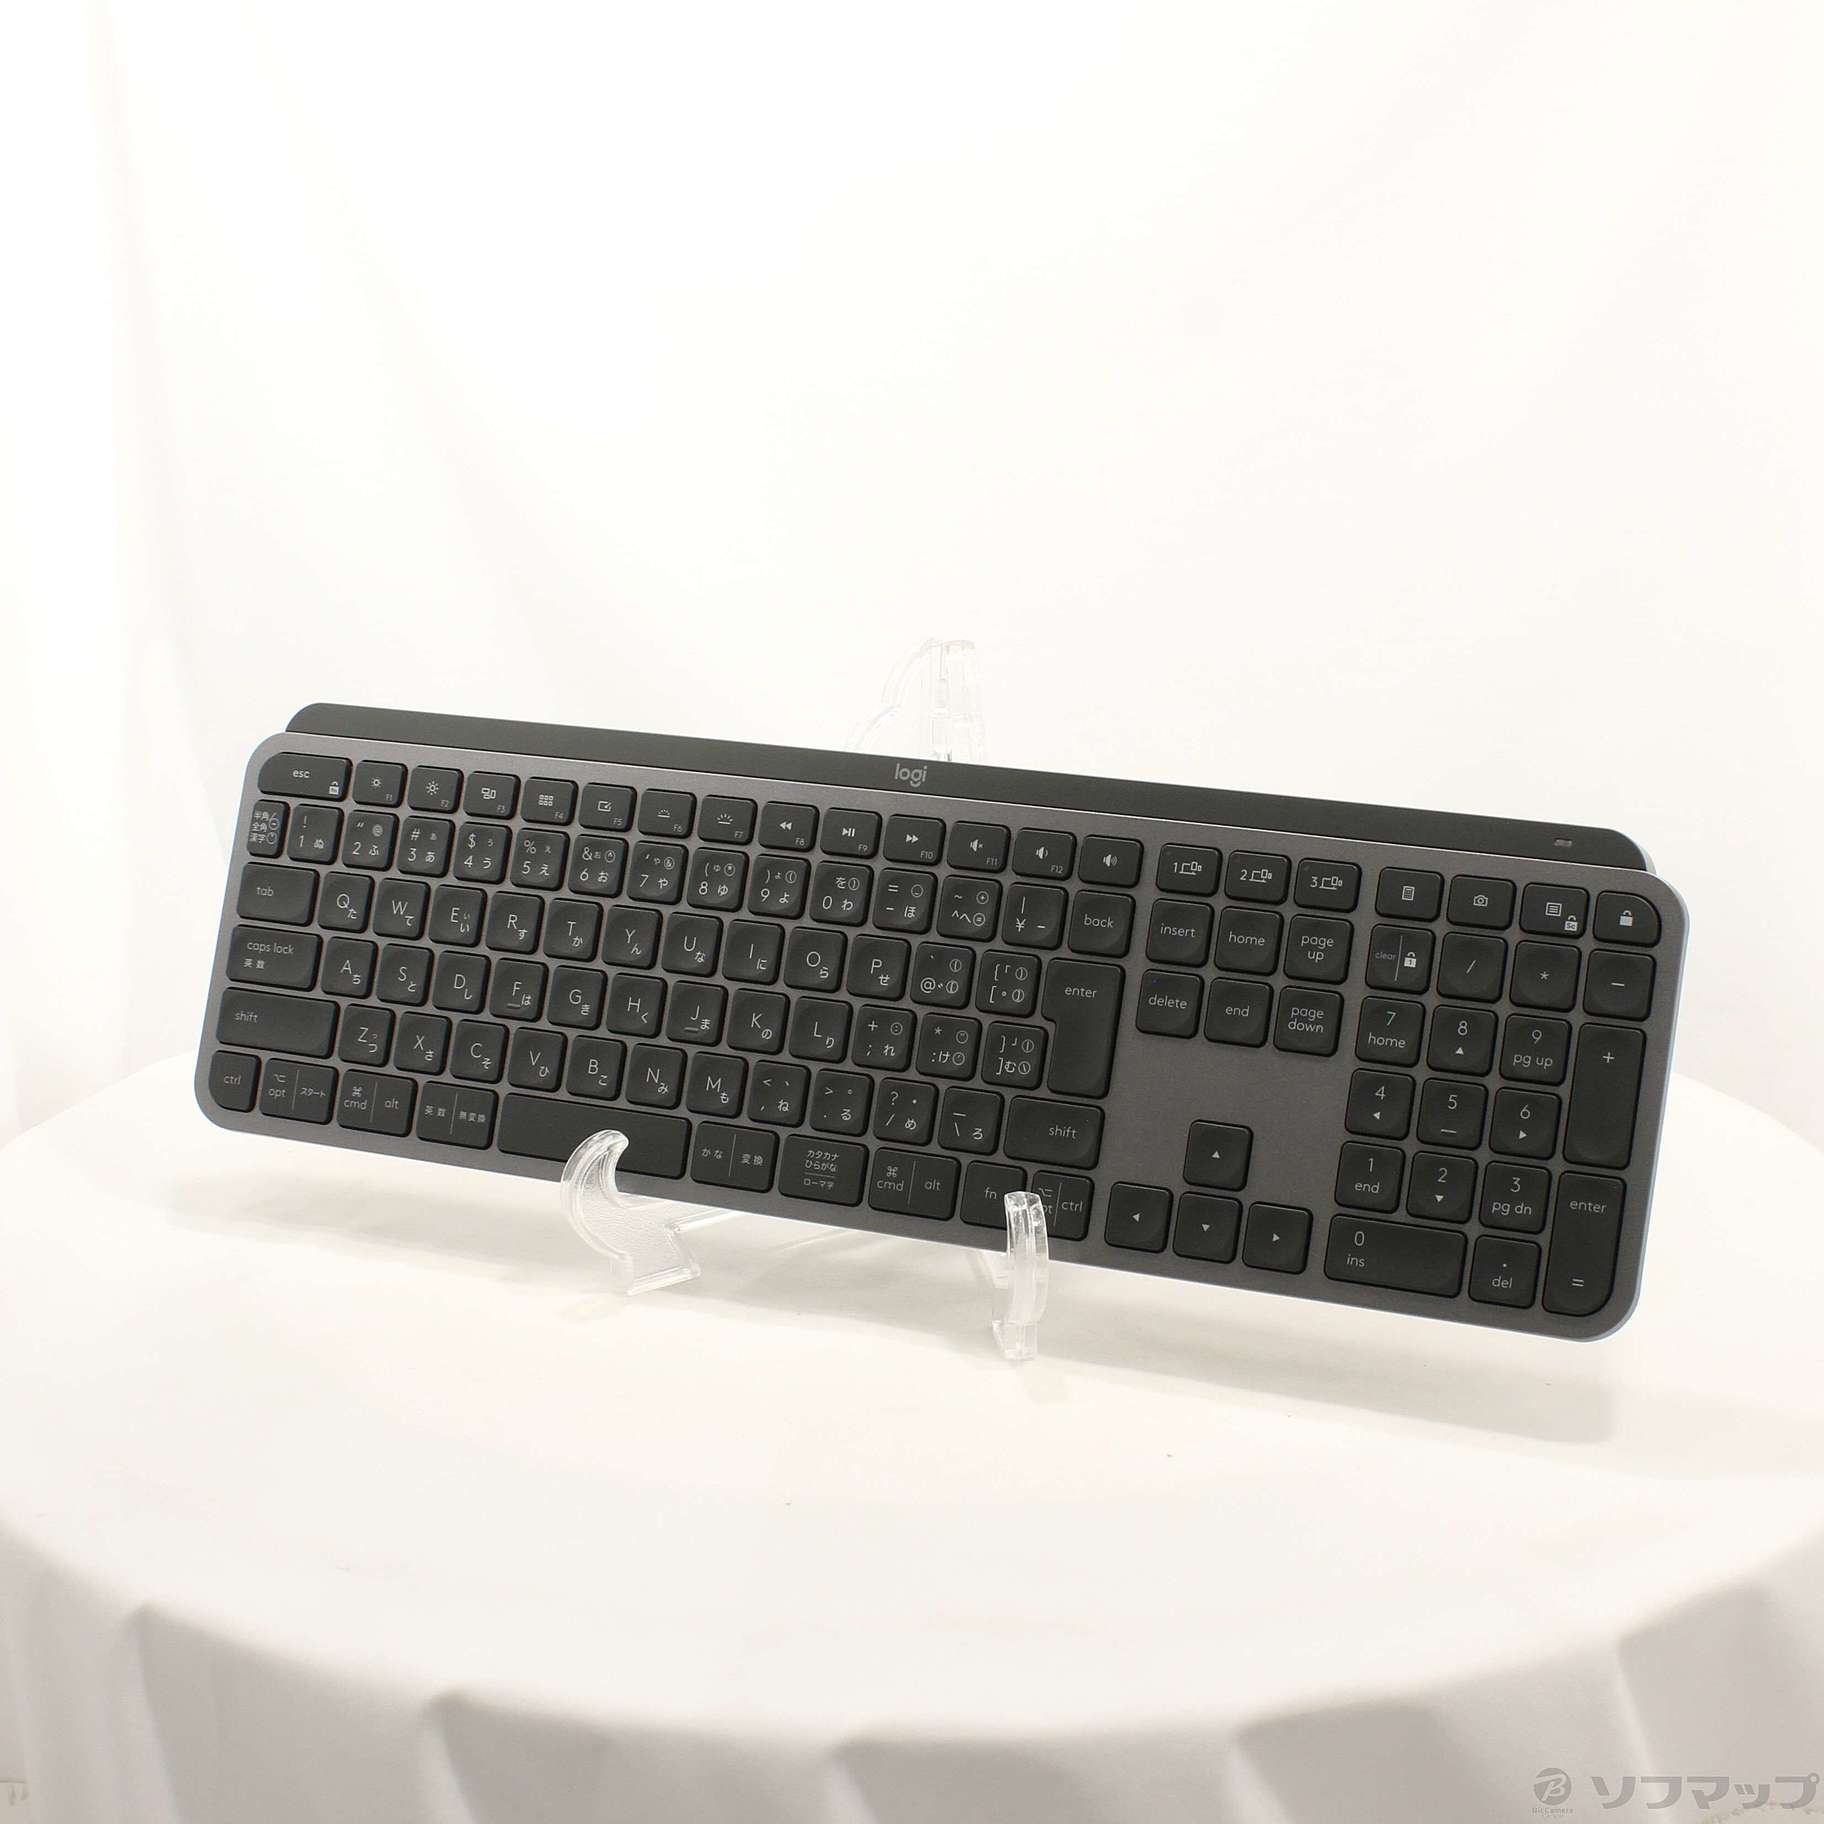 MX KEYS Advanced Wireless Illuminated Keyboard KX800